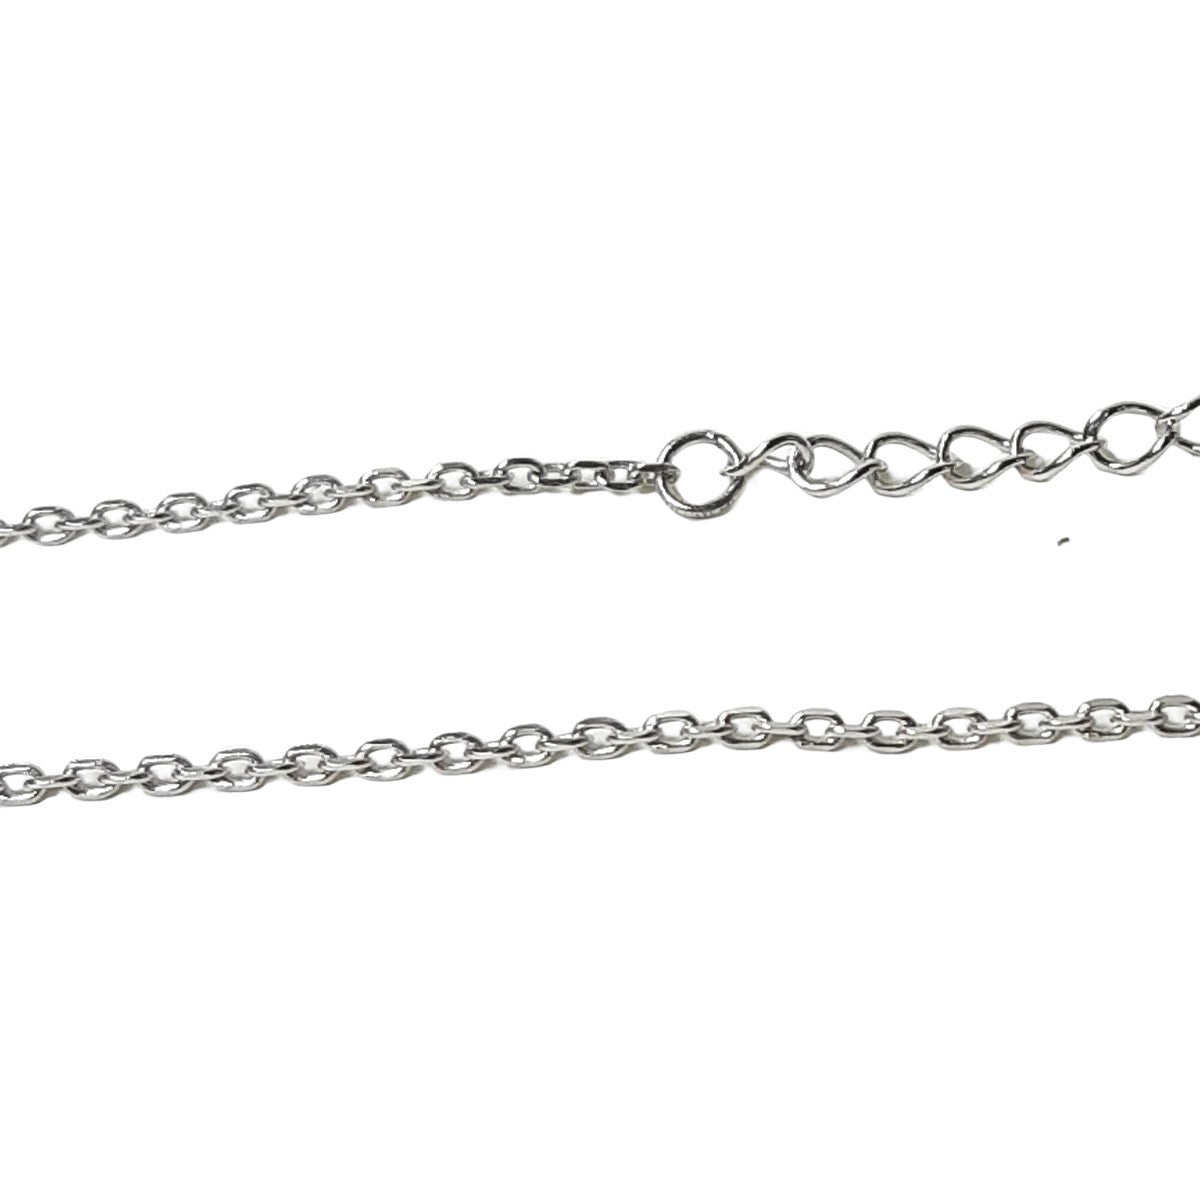 ヴィンテージ シルバー925 ケーブルチェーン 調節付 ネックレス 2.4g DF8 / Vintage Sterling Silver Adjustable Cable Chain Necklace